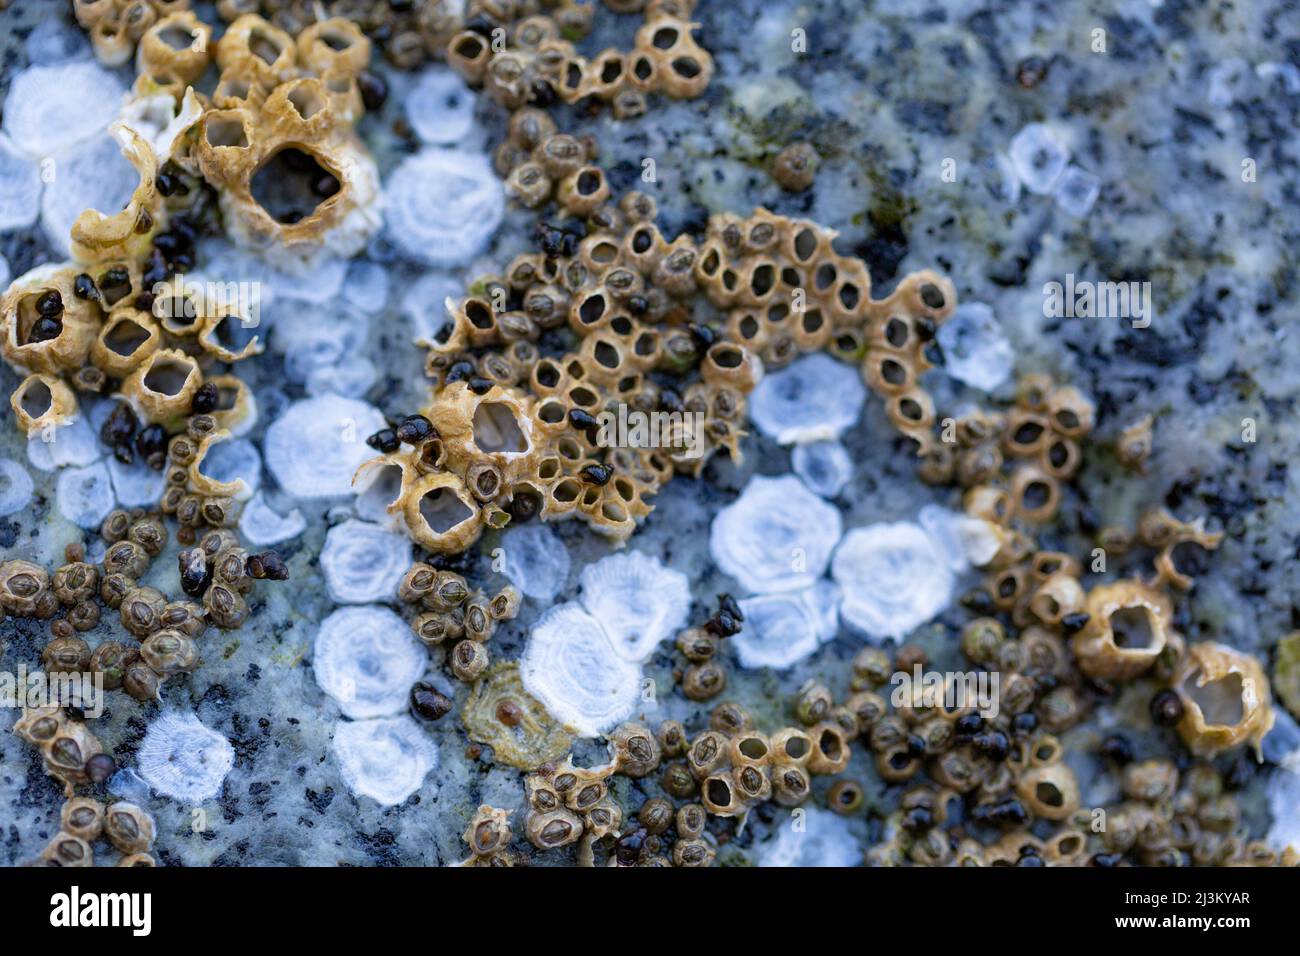 Détail détaillé de la vie marine à la surface d'une roche sur la rive de Sechelt Beach le long de la Sunshine Coast de la Colombie-Britannique, Canada; Colombie-Britannique, Canada Banque D'Images